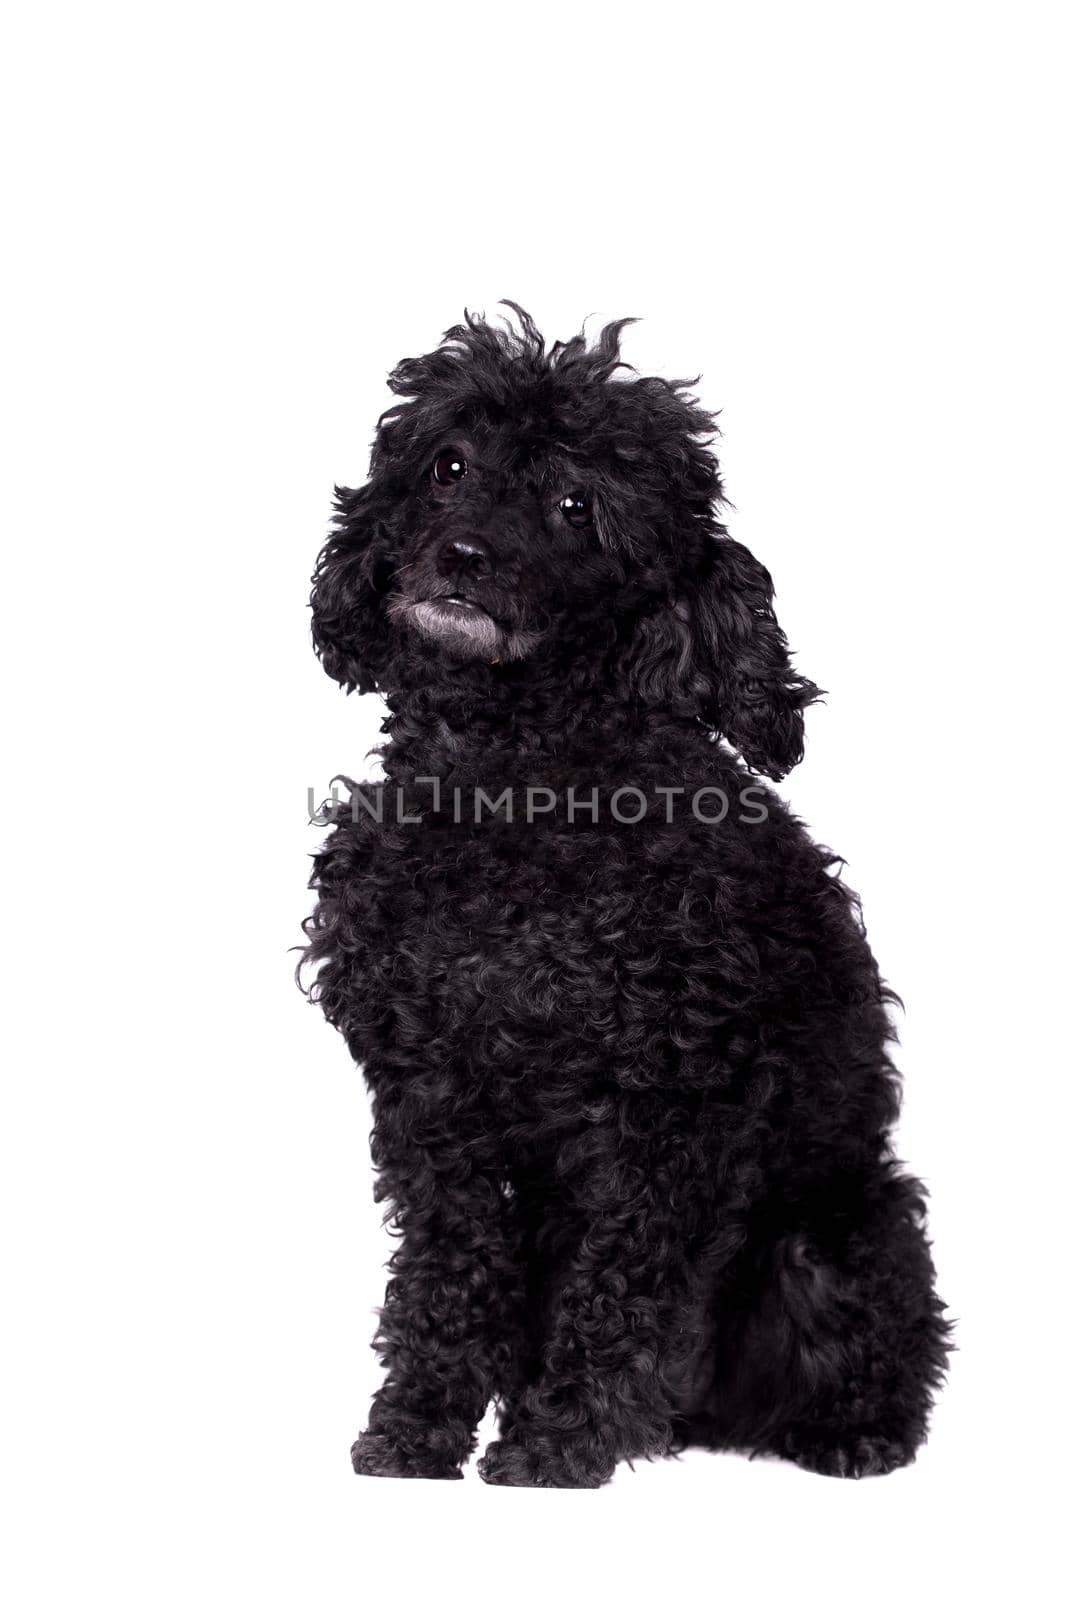 Black poodle dog isolated on white background